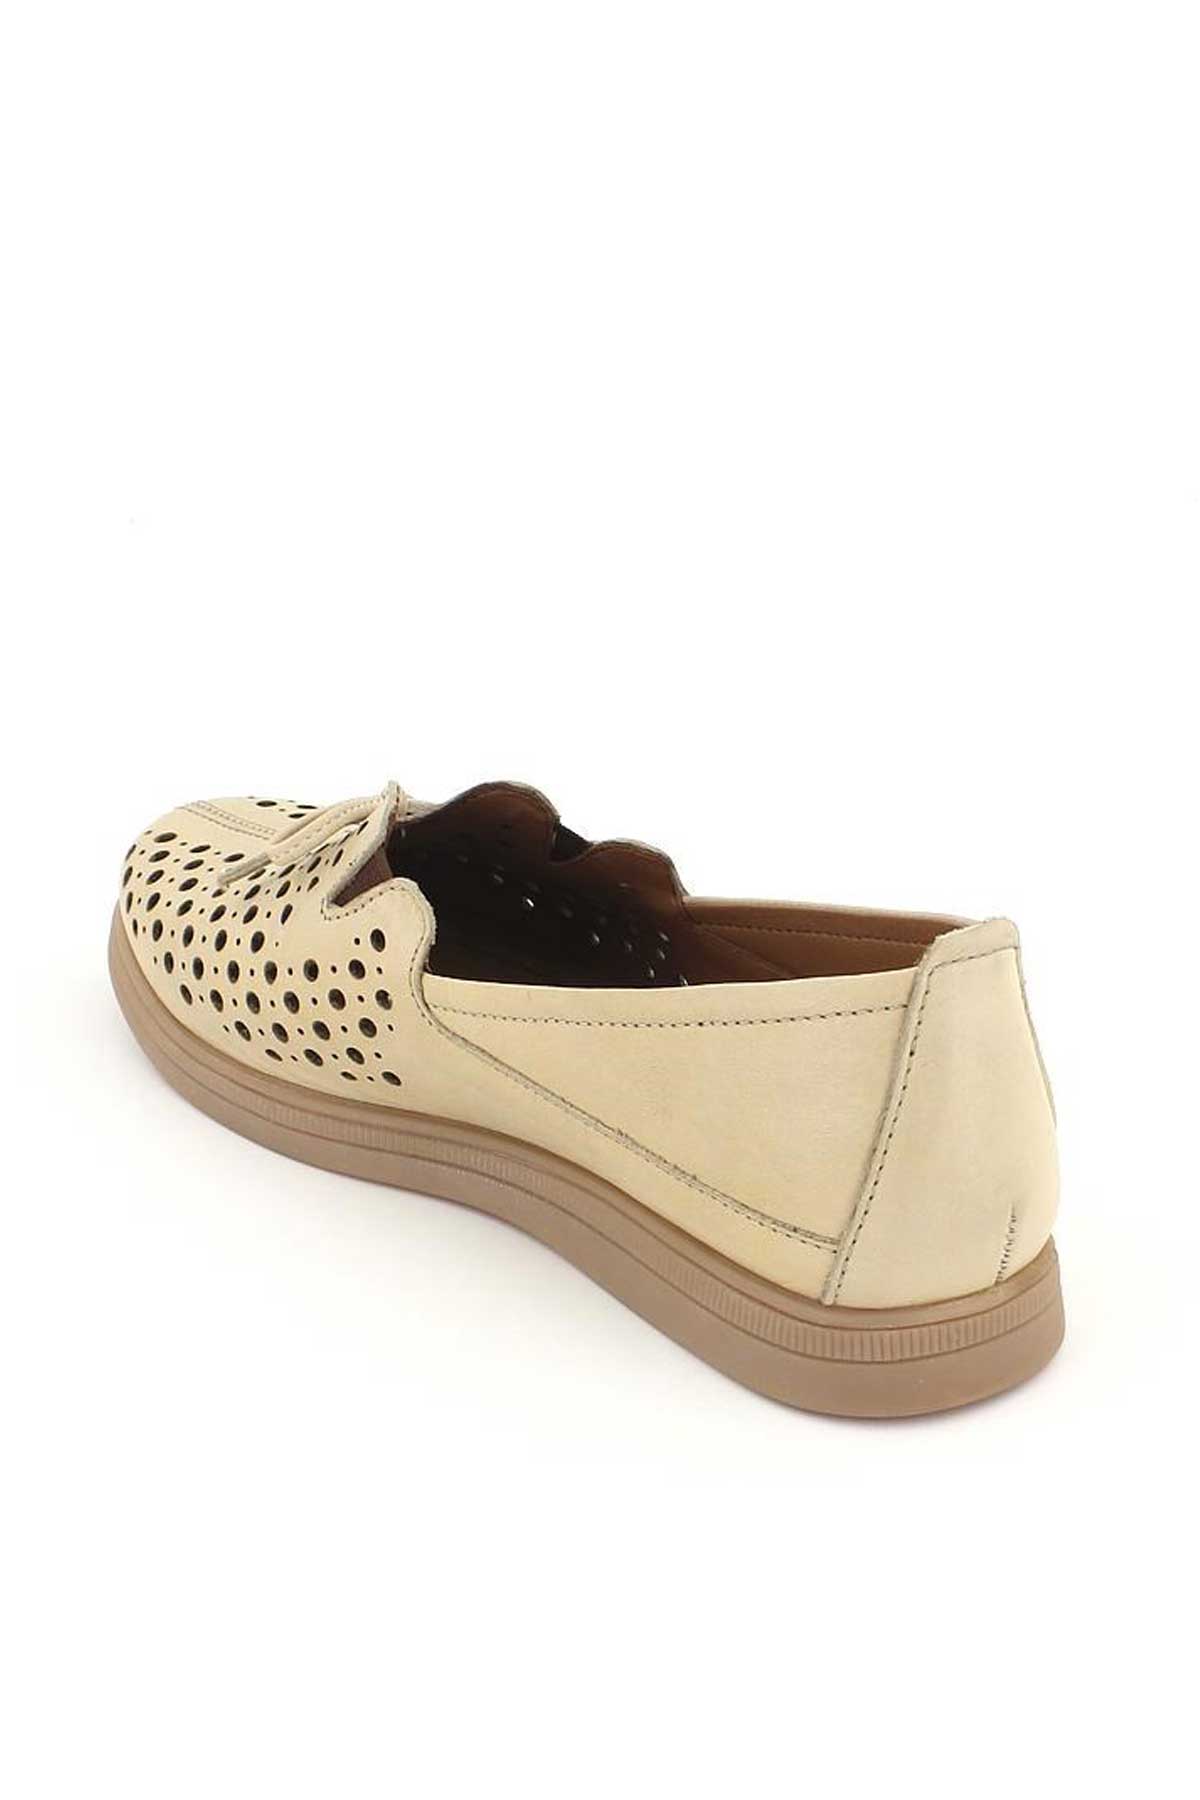 Kadın Yazlık Comfort Ayakkabı Bej 1813627Y - Thumbnail